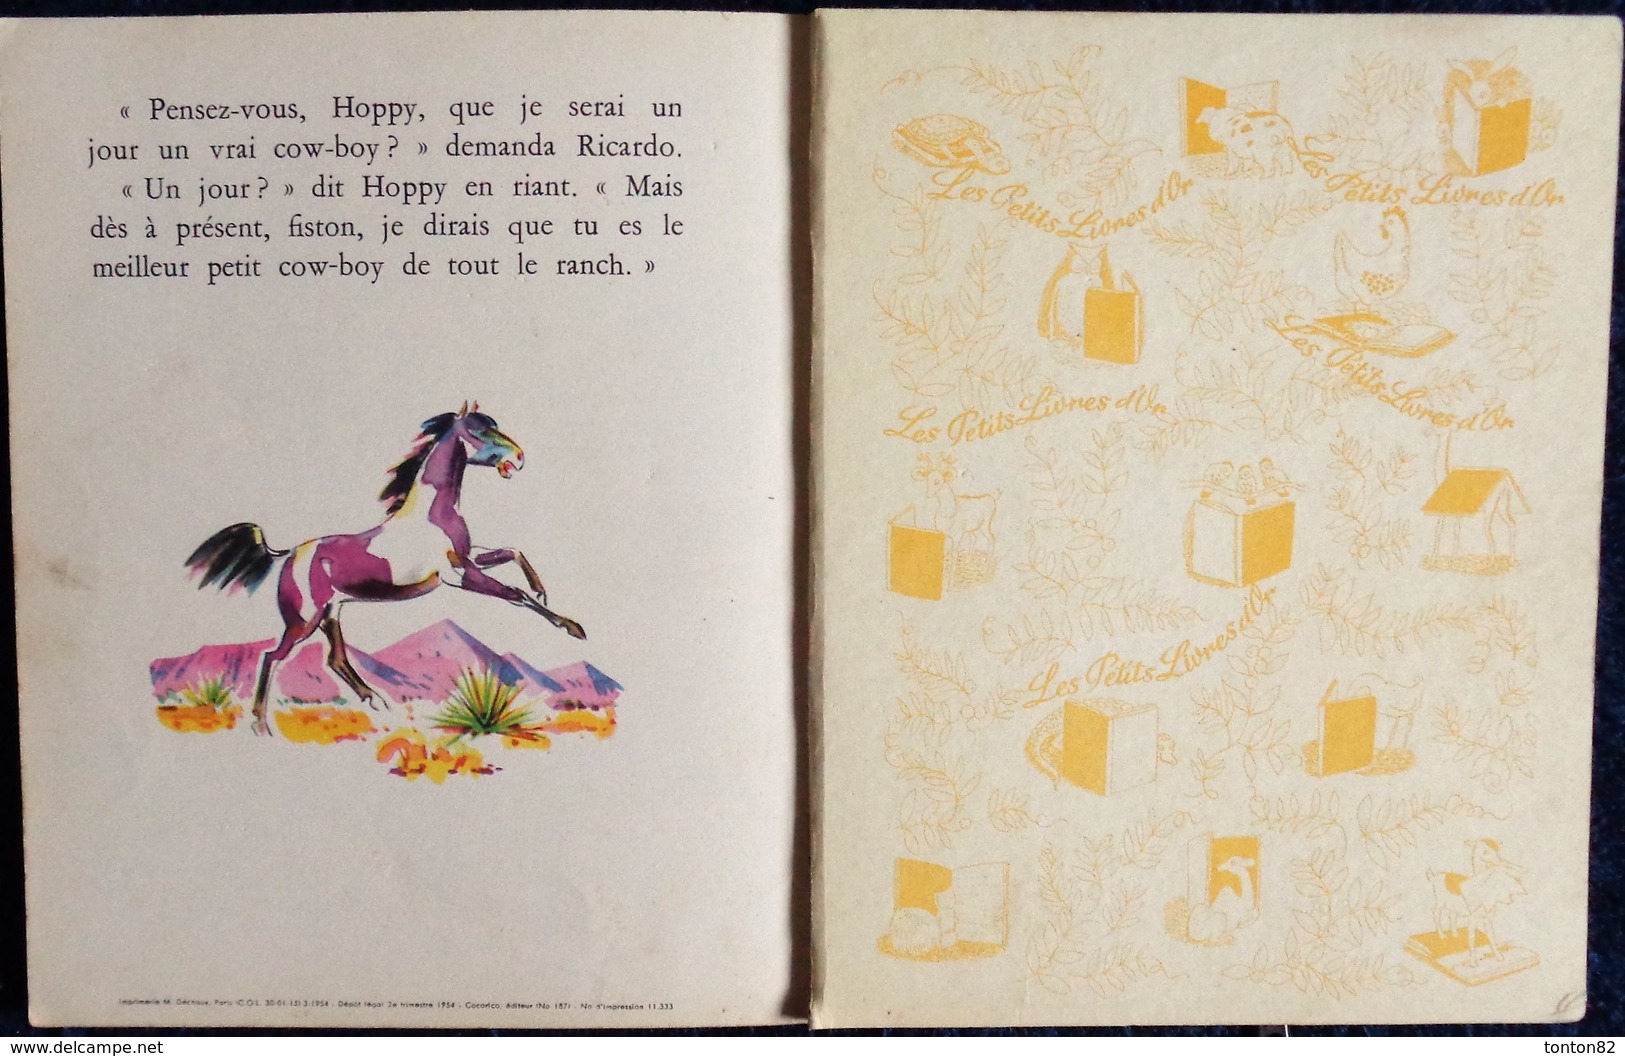 Un Petit Livre d' Or N° 73 - Hopalong Cassidy et son jeune ami - Éditions COCORICO - ( 1954 ) .